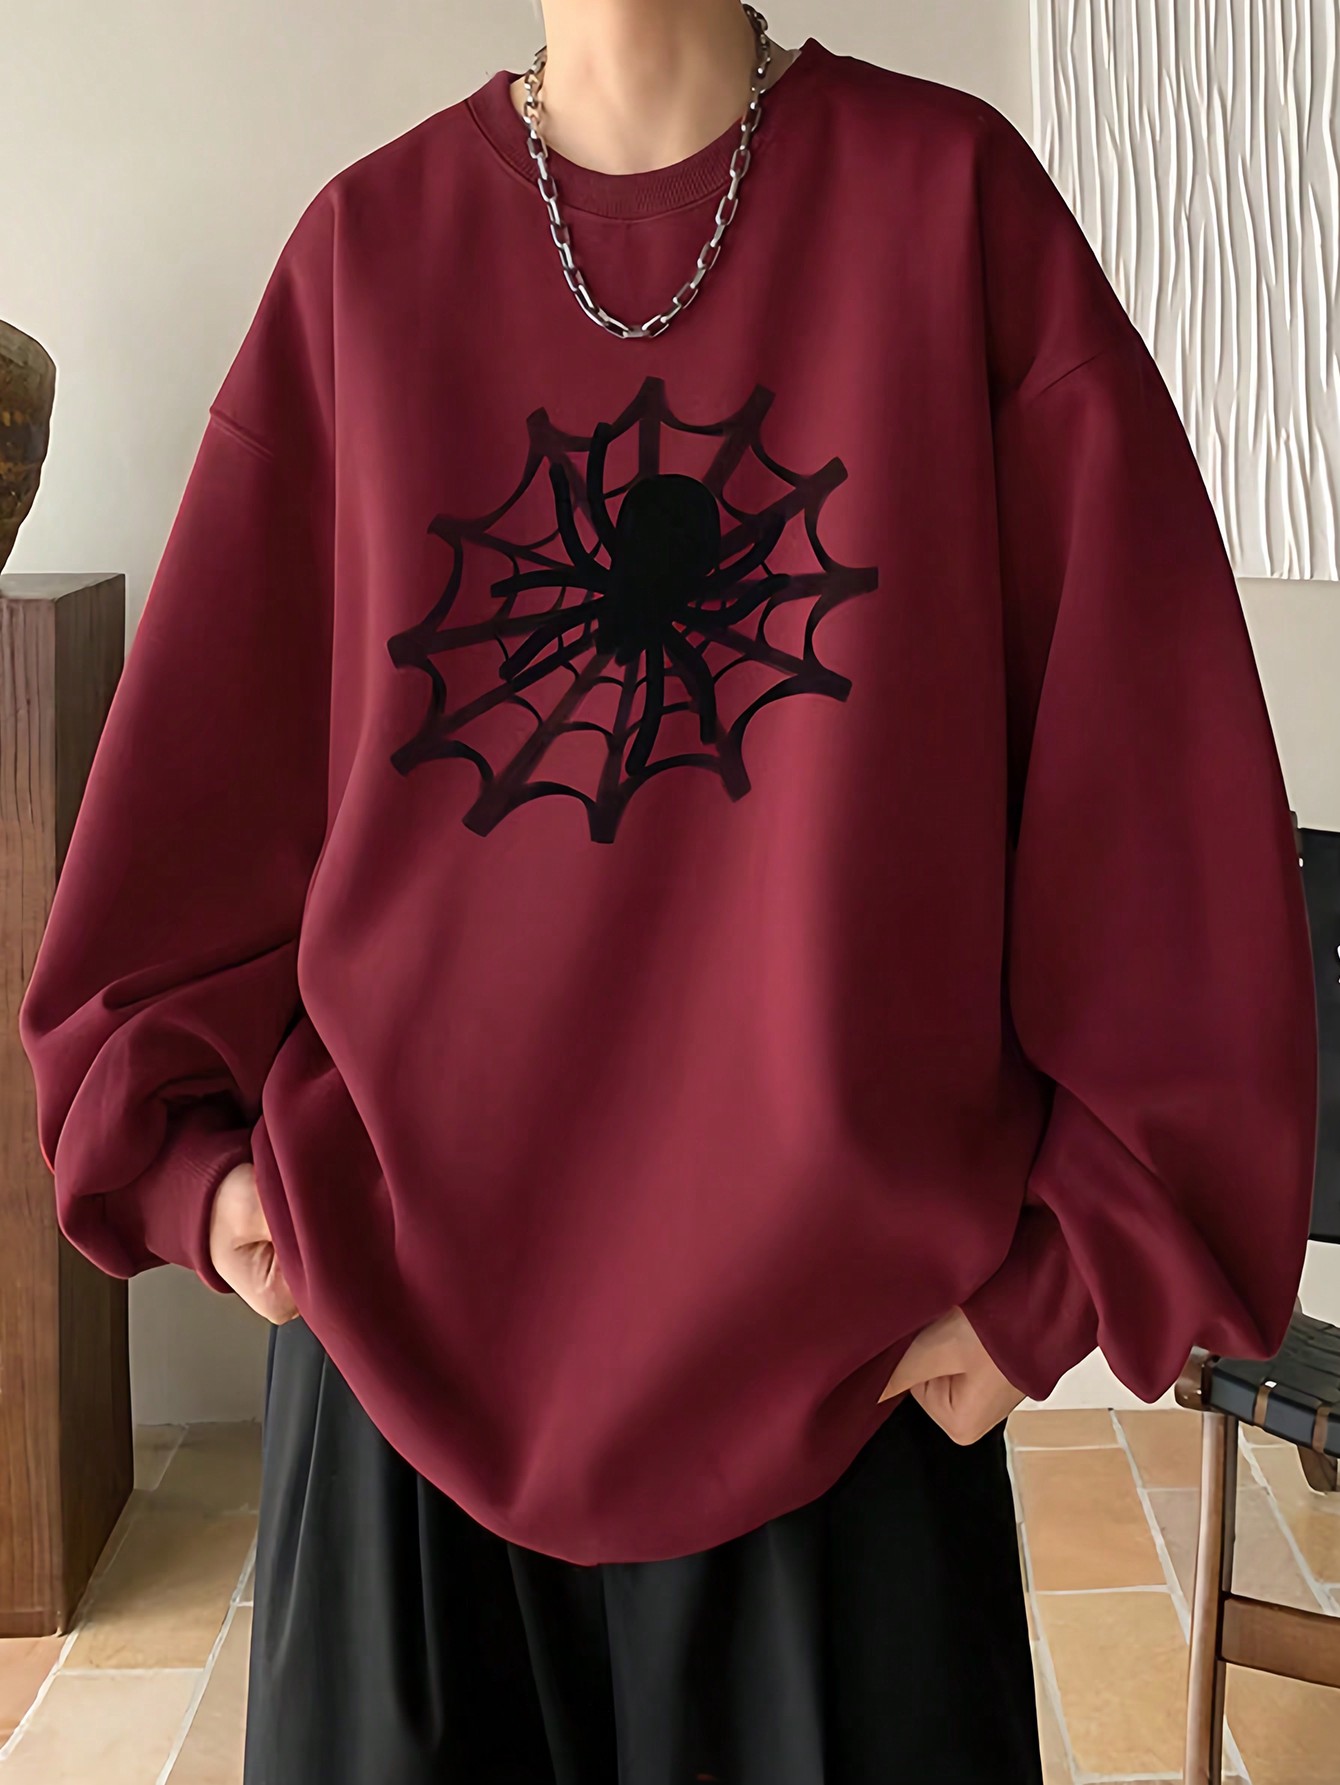 Manfinity EMRG Мужской пуловер свободного кроя с принтом паутины и заниженными плечами, бургундия мужской рюкзак с двумя плечами черный